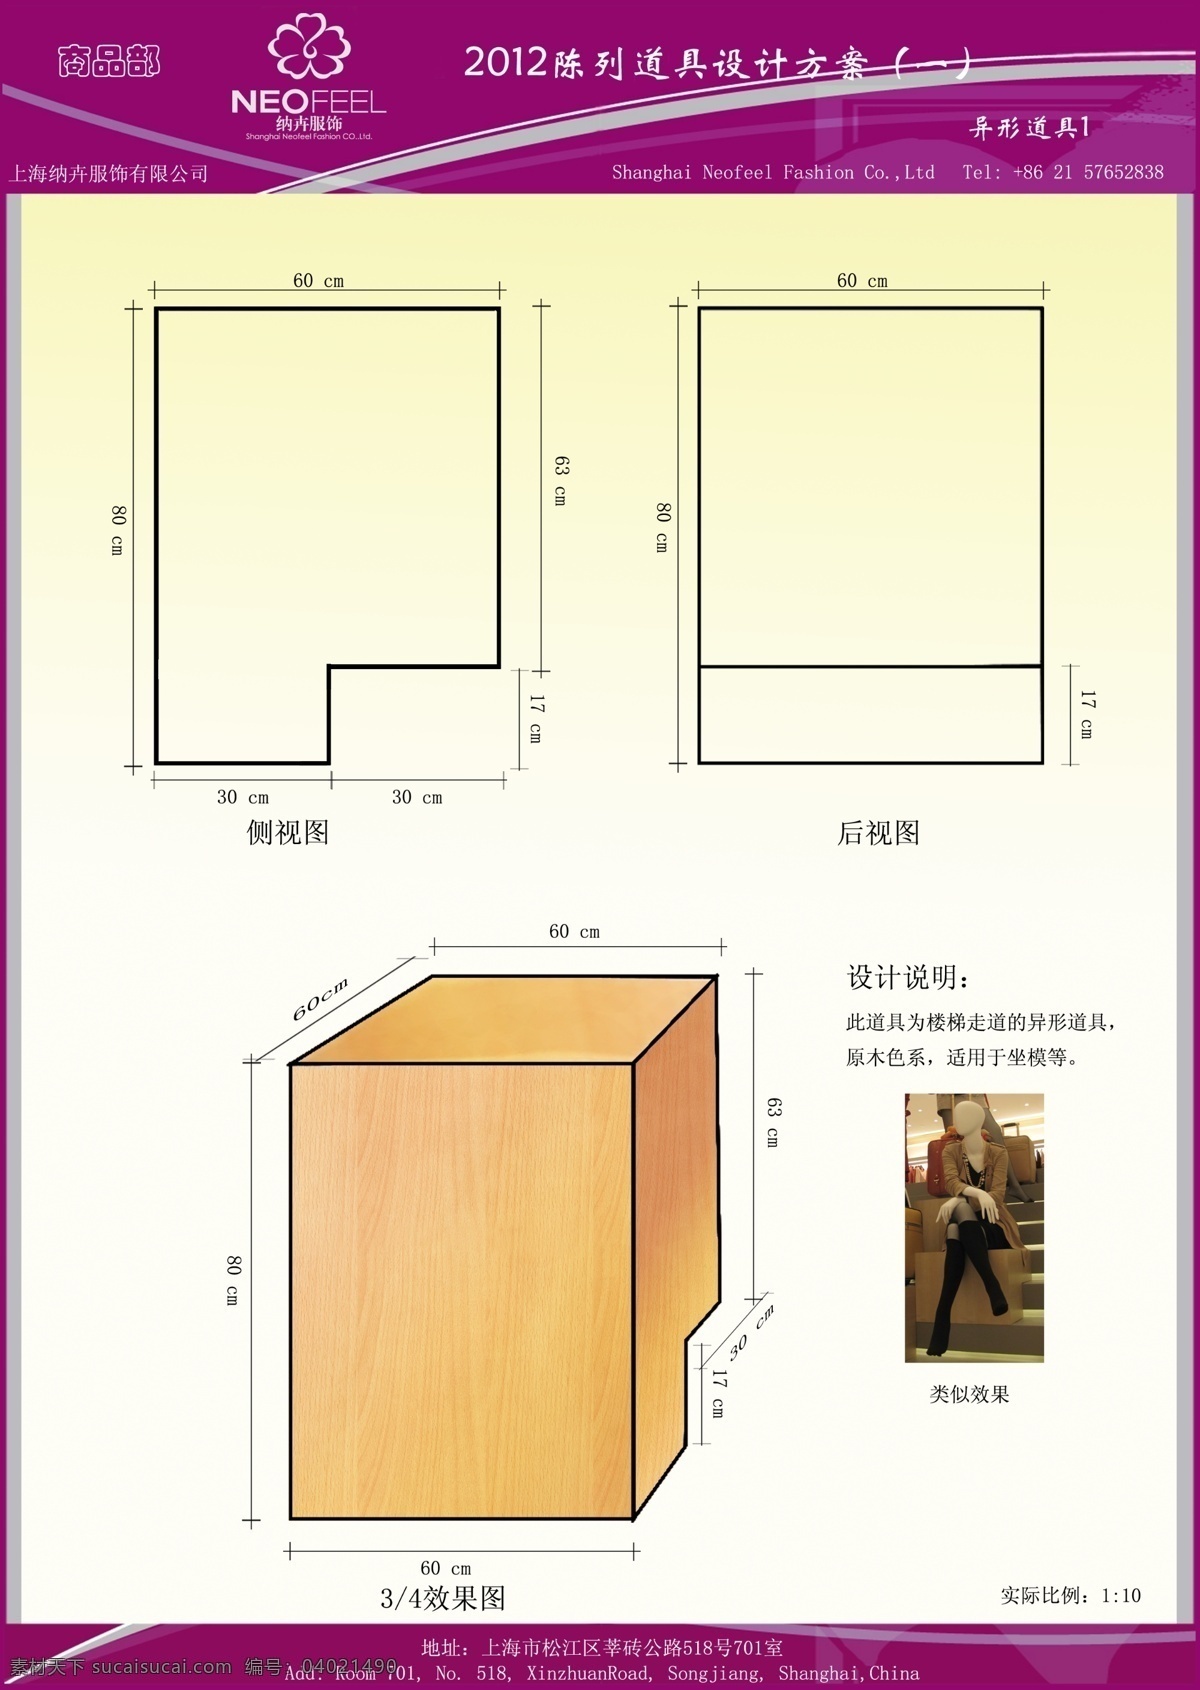 广告设计模板 楼梯 源文件 雅莹橱窗 异性道具 模特设计 木质尺寸 橱窗陈列 创新方案 坐模 其他海报设计